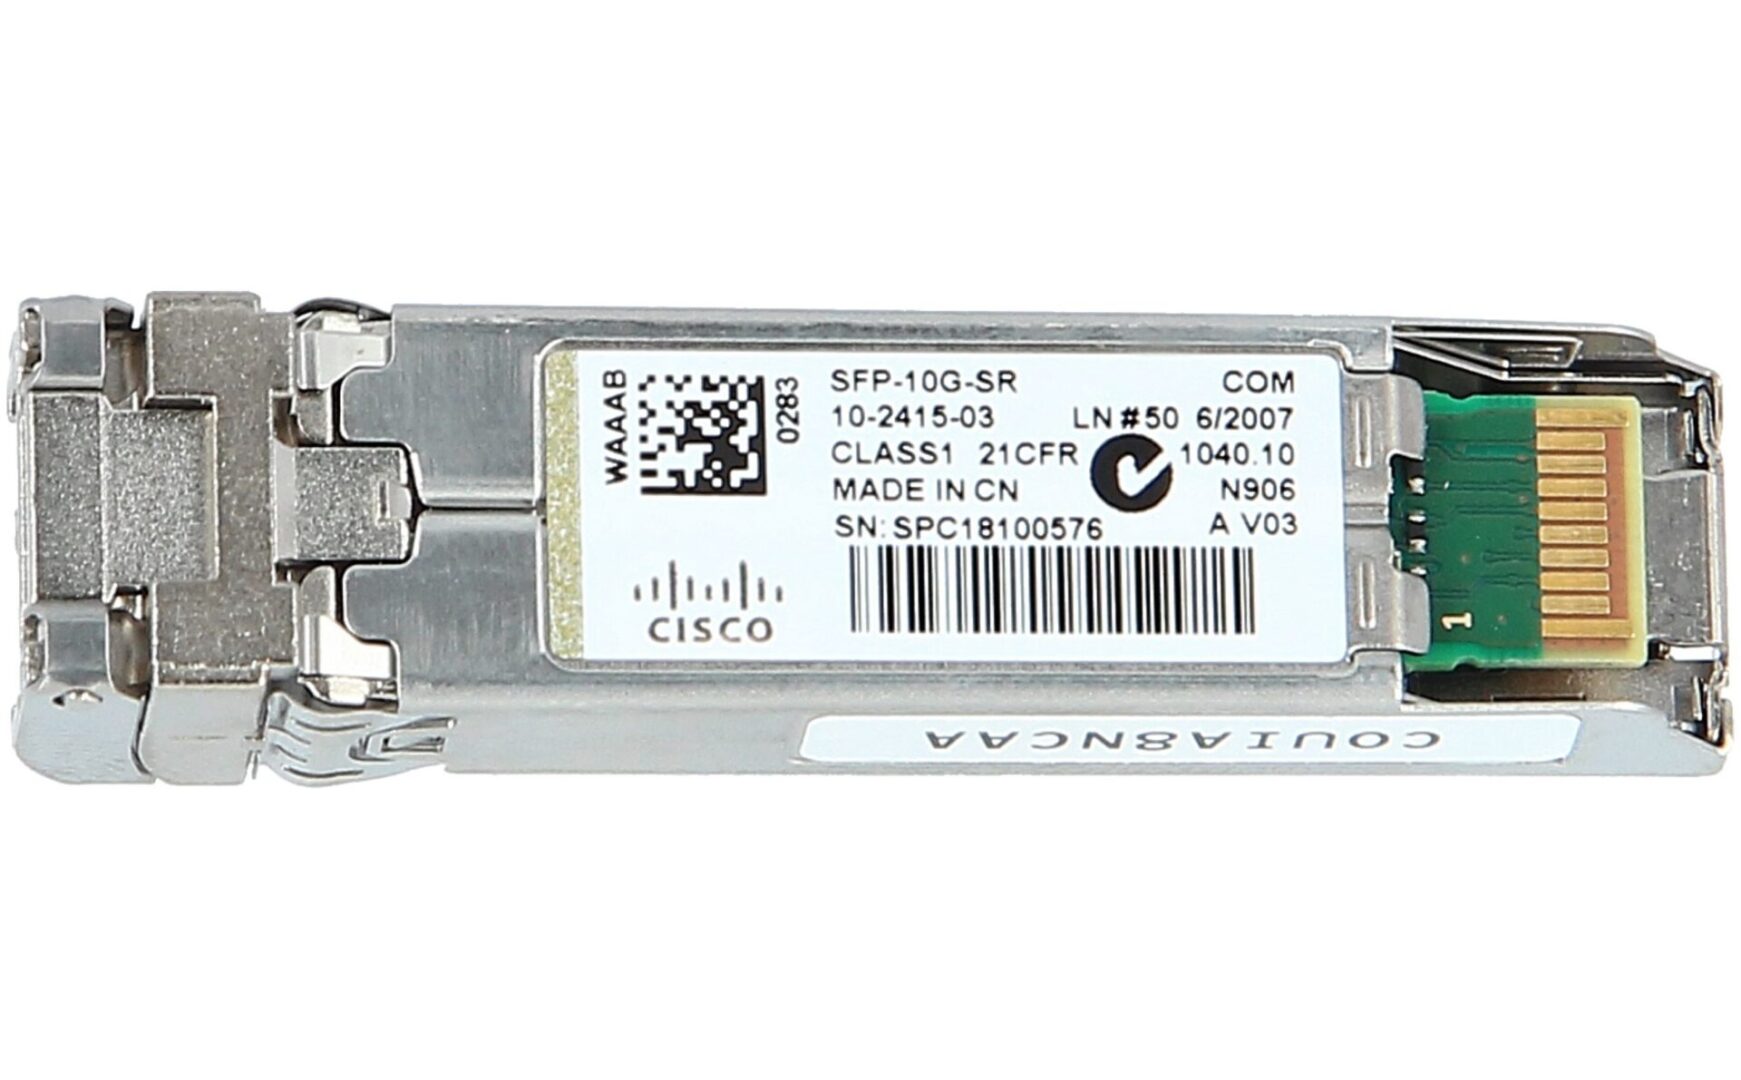 A Cisco SFP-10G-SR Short Wave Transceiver